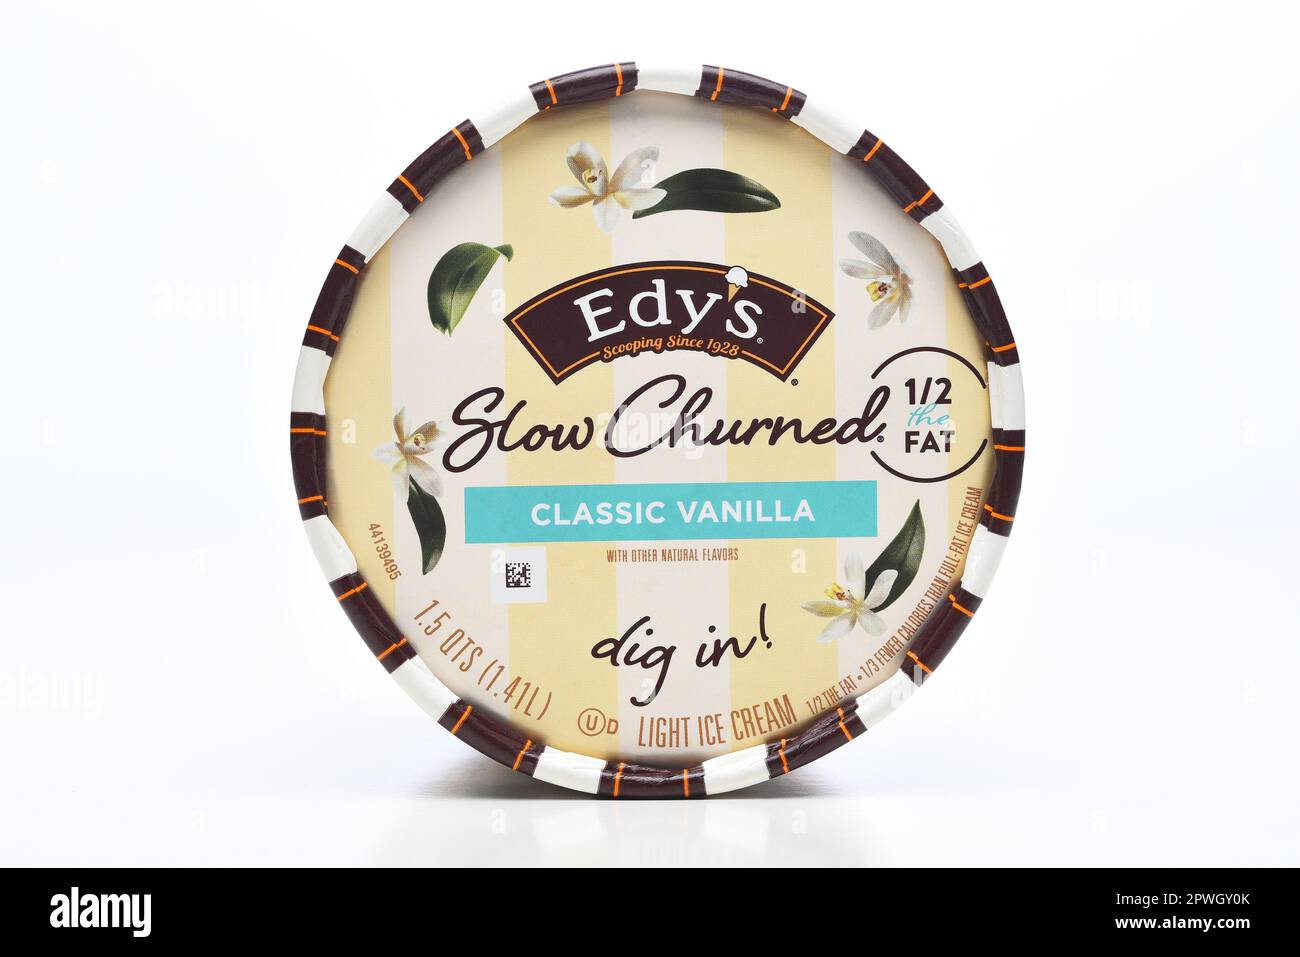 IRVINE, KALIFORNIEN - 29. April 2023: Verschluss des Deckels eines Kartons von Edys klassischer Vanilla-Eiscreme, langsam gequetscht, mit weniger Fett. Stockfoto